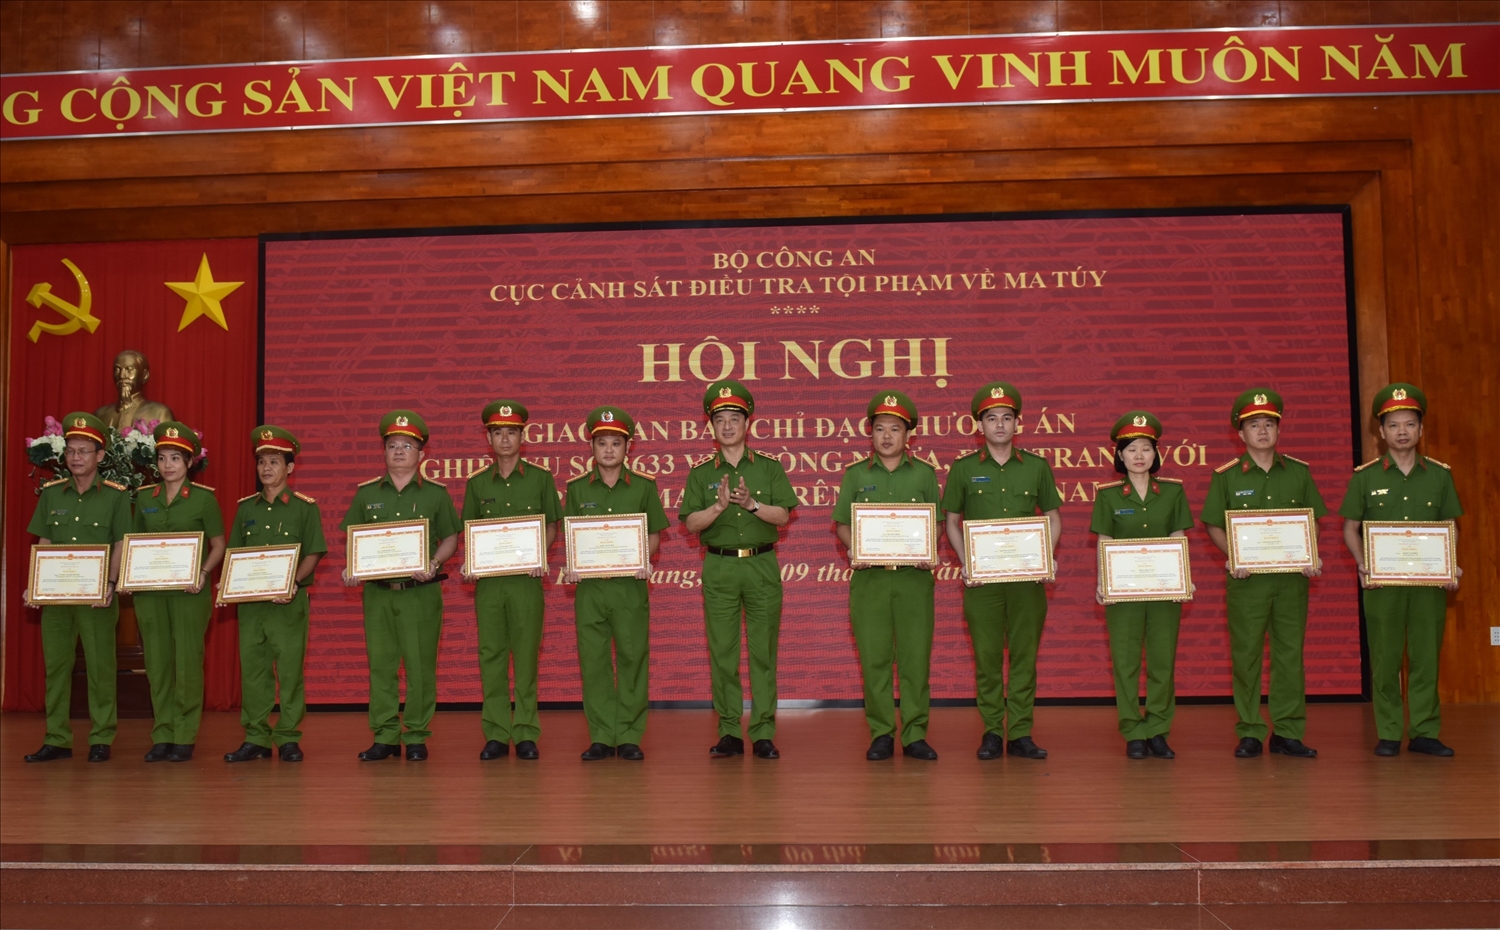 Trung tướng Nguyễn Duy Ngọc - Thứ trưởng Bộ Công an tặng Bằng khen cho 11 cá nhân đã đạt thành tích xuất sắc trong việc thực hiện Phương án nghiệp vụ số 3633